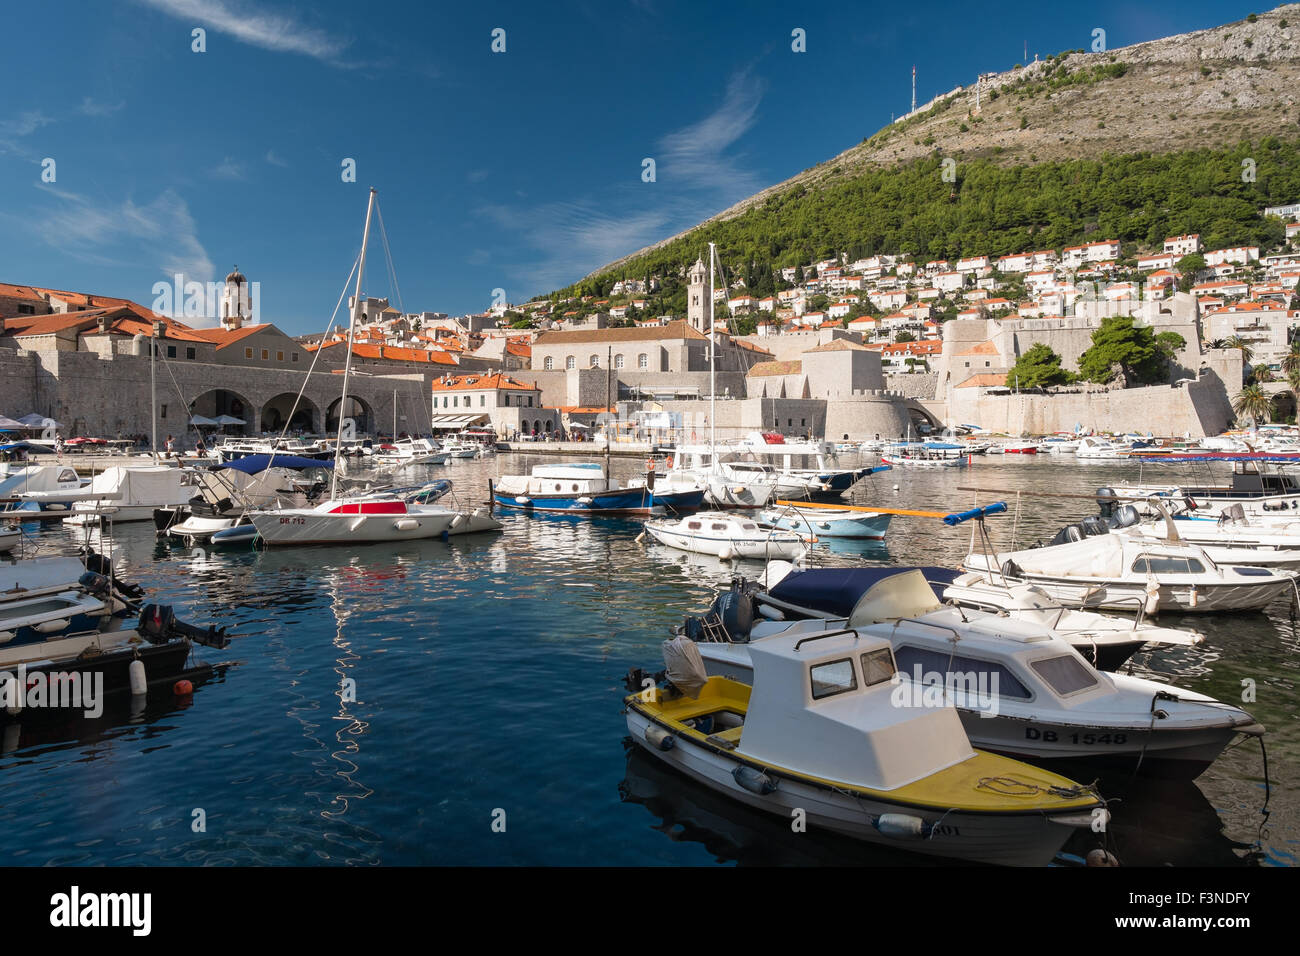 Bateaux dans le port de vieille ville de Dubrovnik, Croatie Banque D'Images